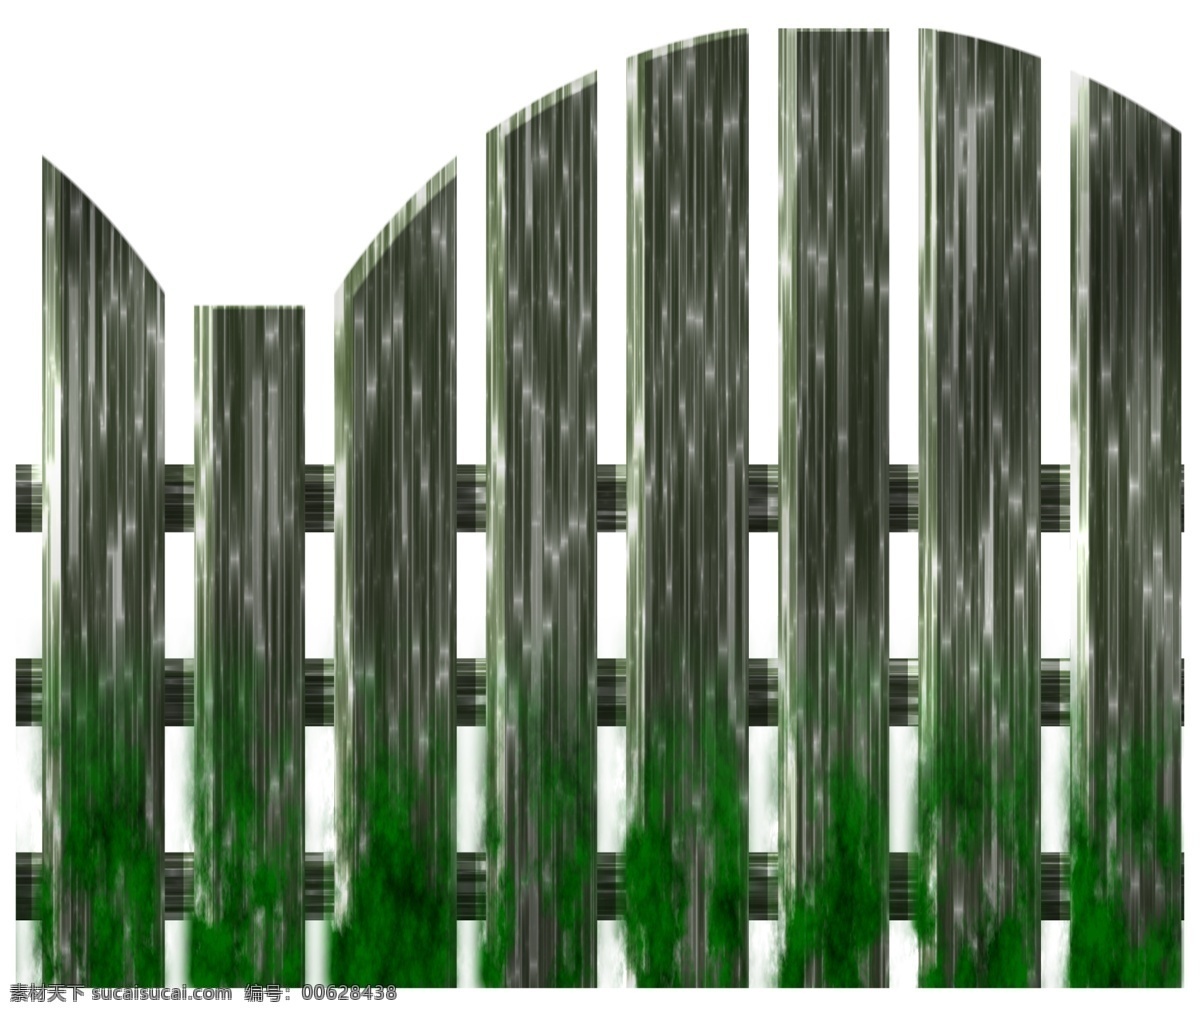 分层 背景分层 背景素材 传统建筑 户外 栏杆 篱笆 围栏 篱笆素材下载 篱笆模板下载 欧式篱笆 围墙 隔离 源文件 家居装饰素材